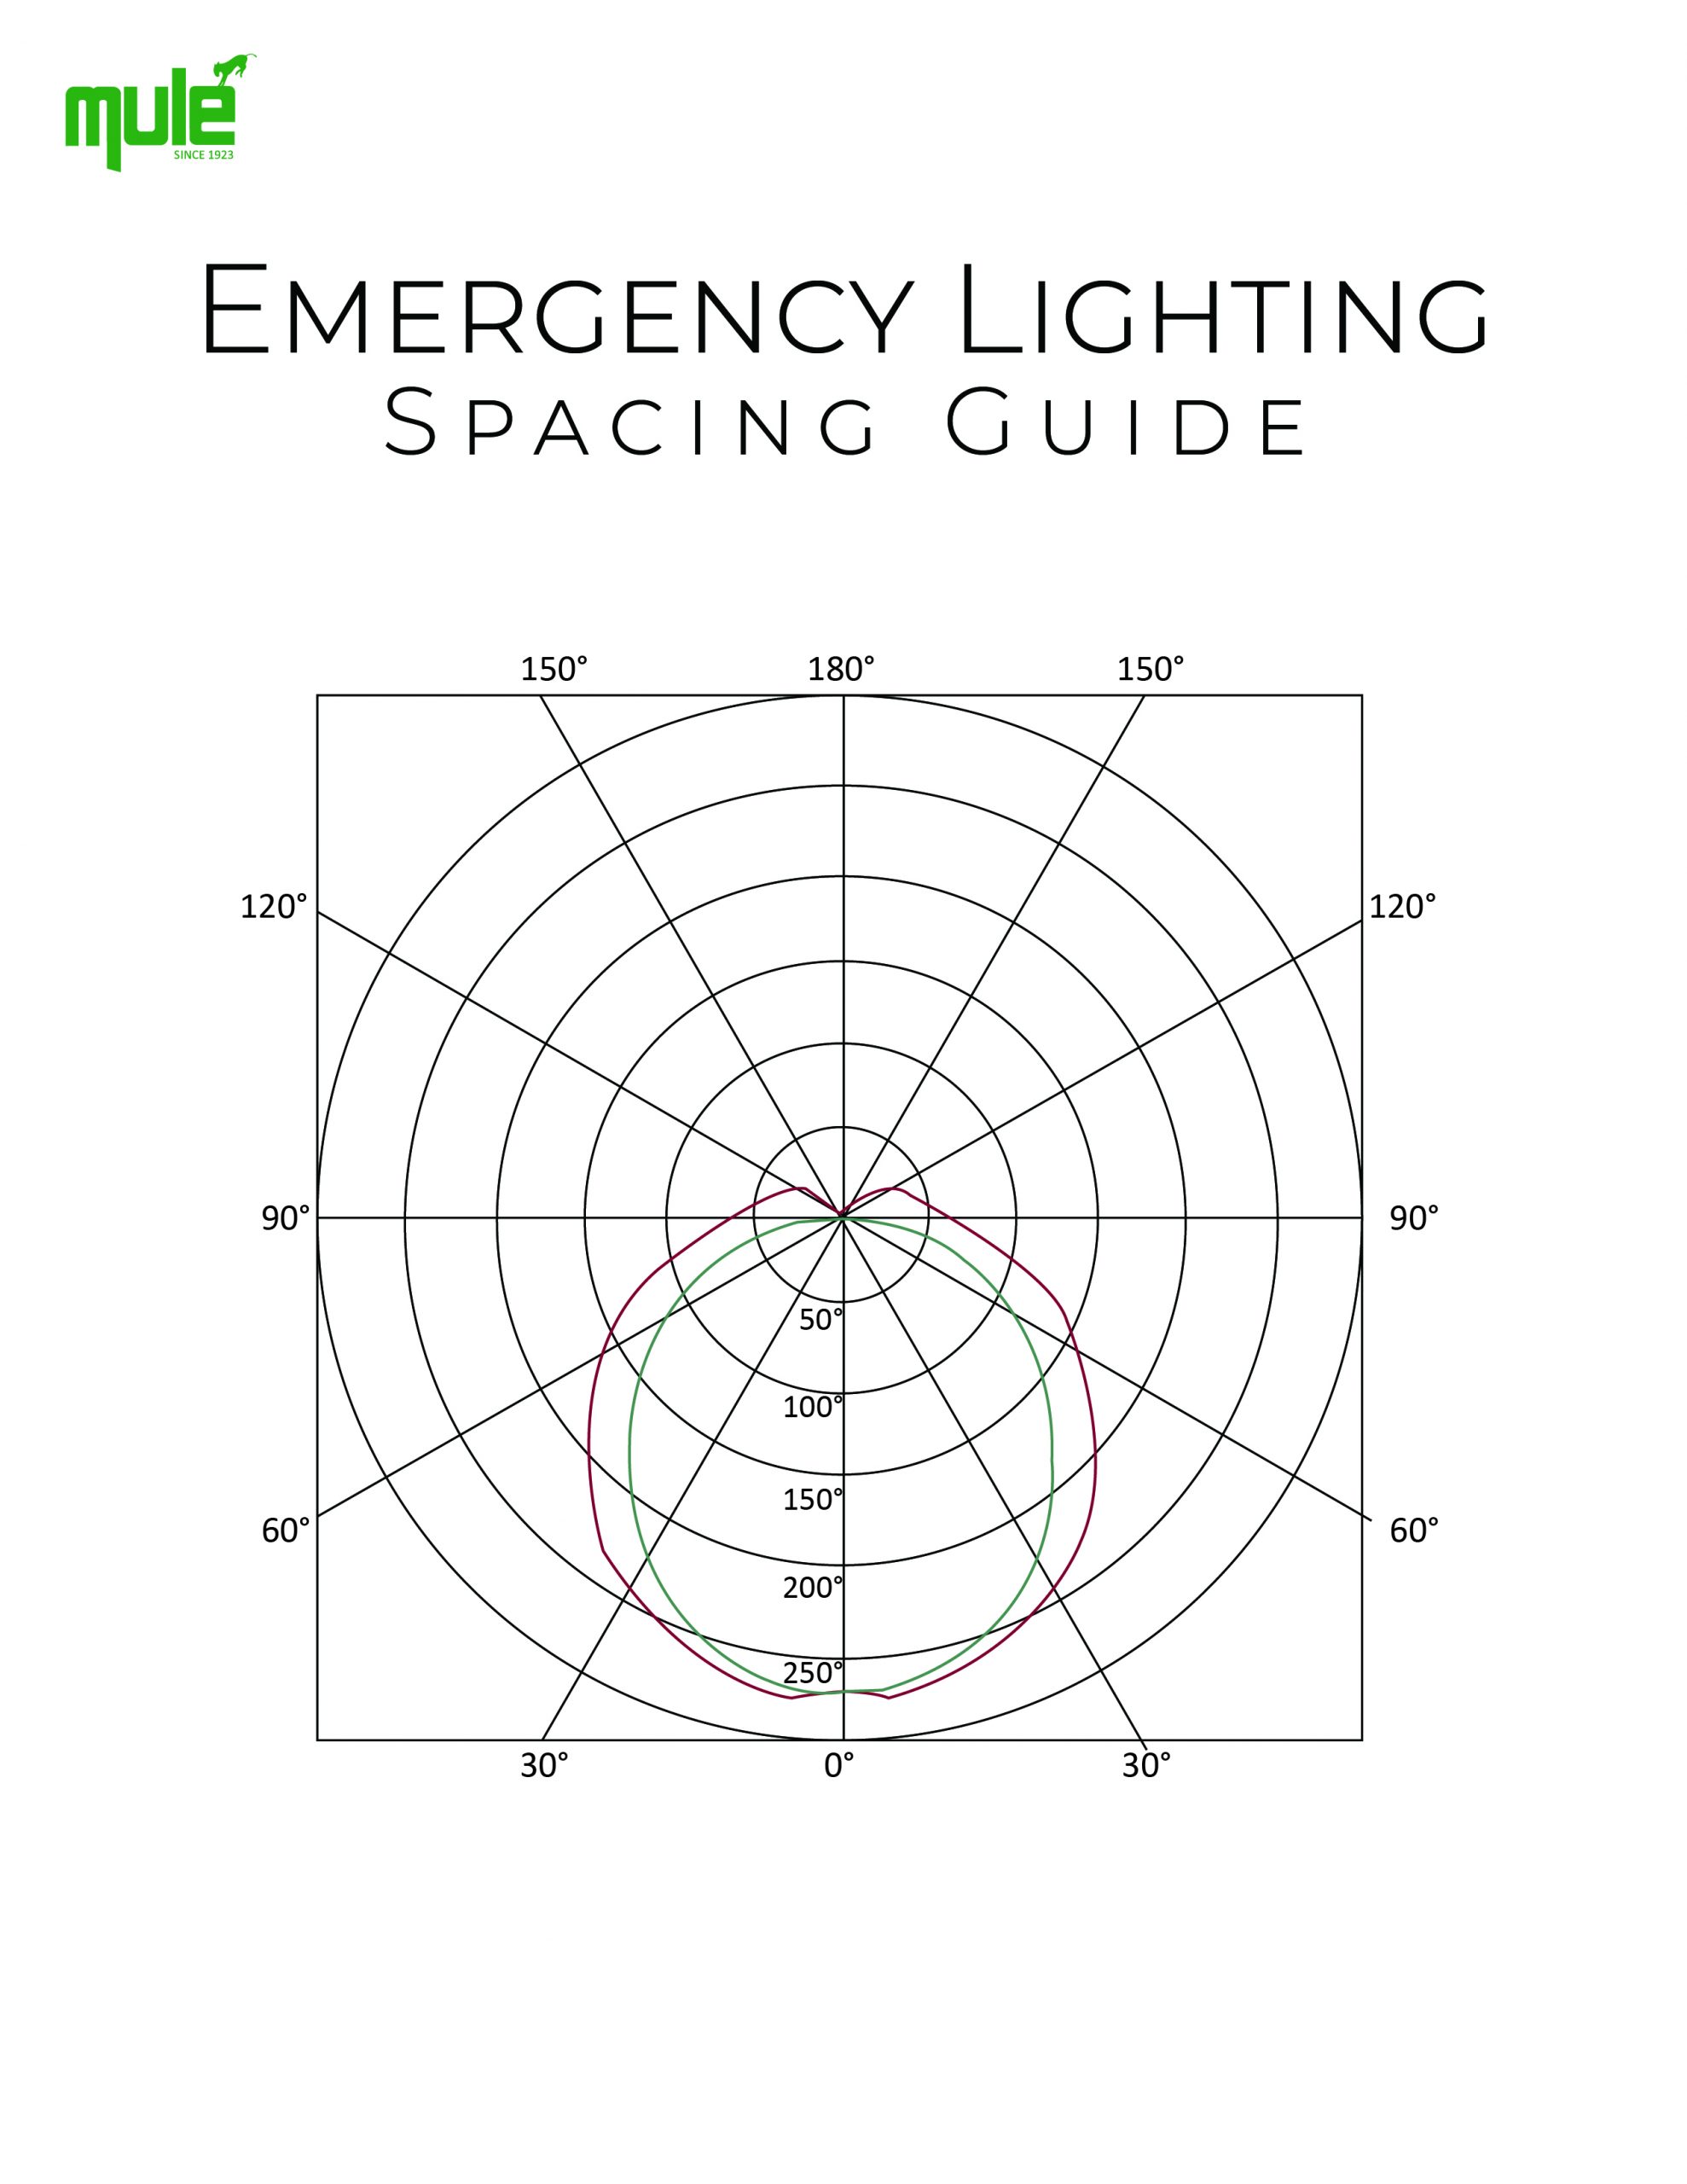 Mule Lighting - Emergency Lighting Spacing Guide 